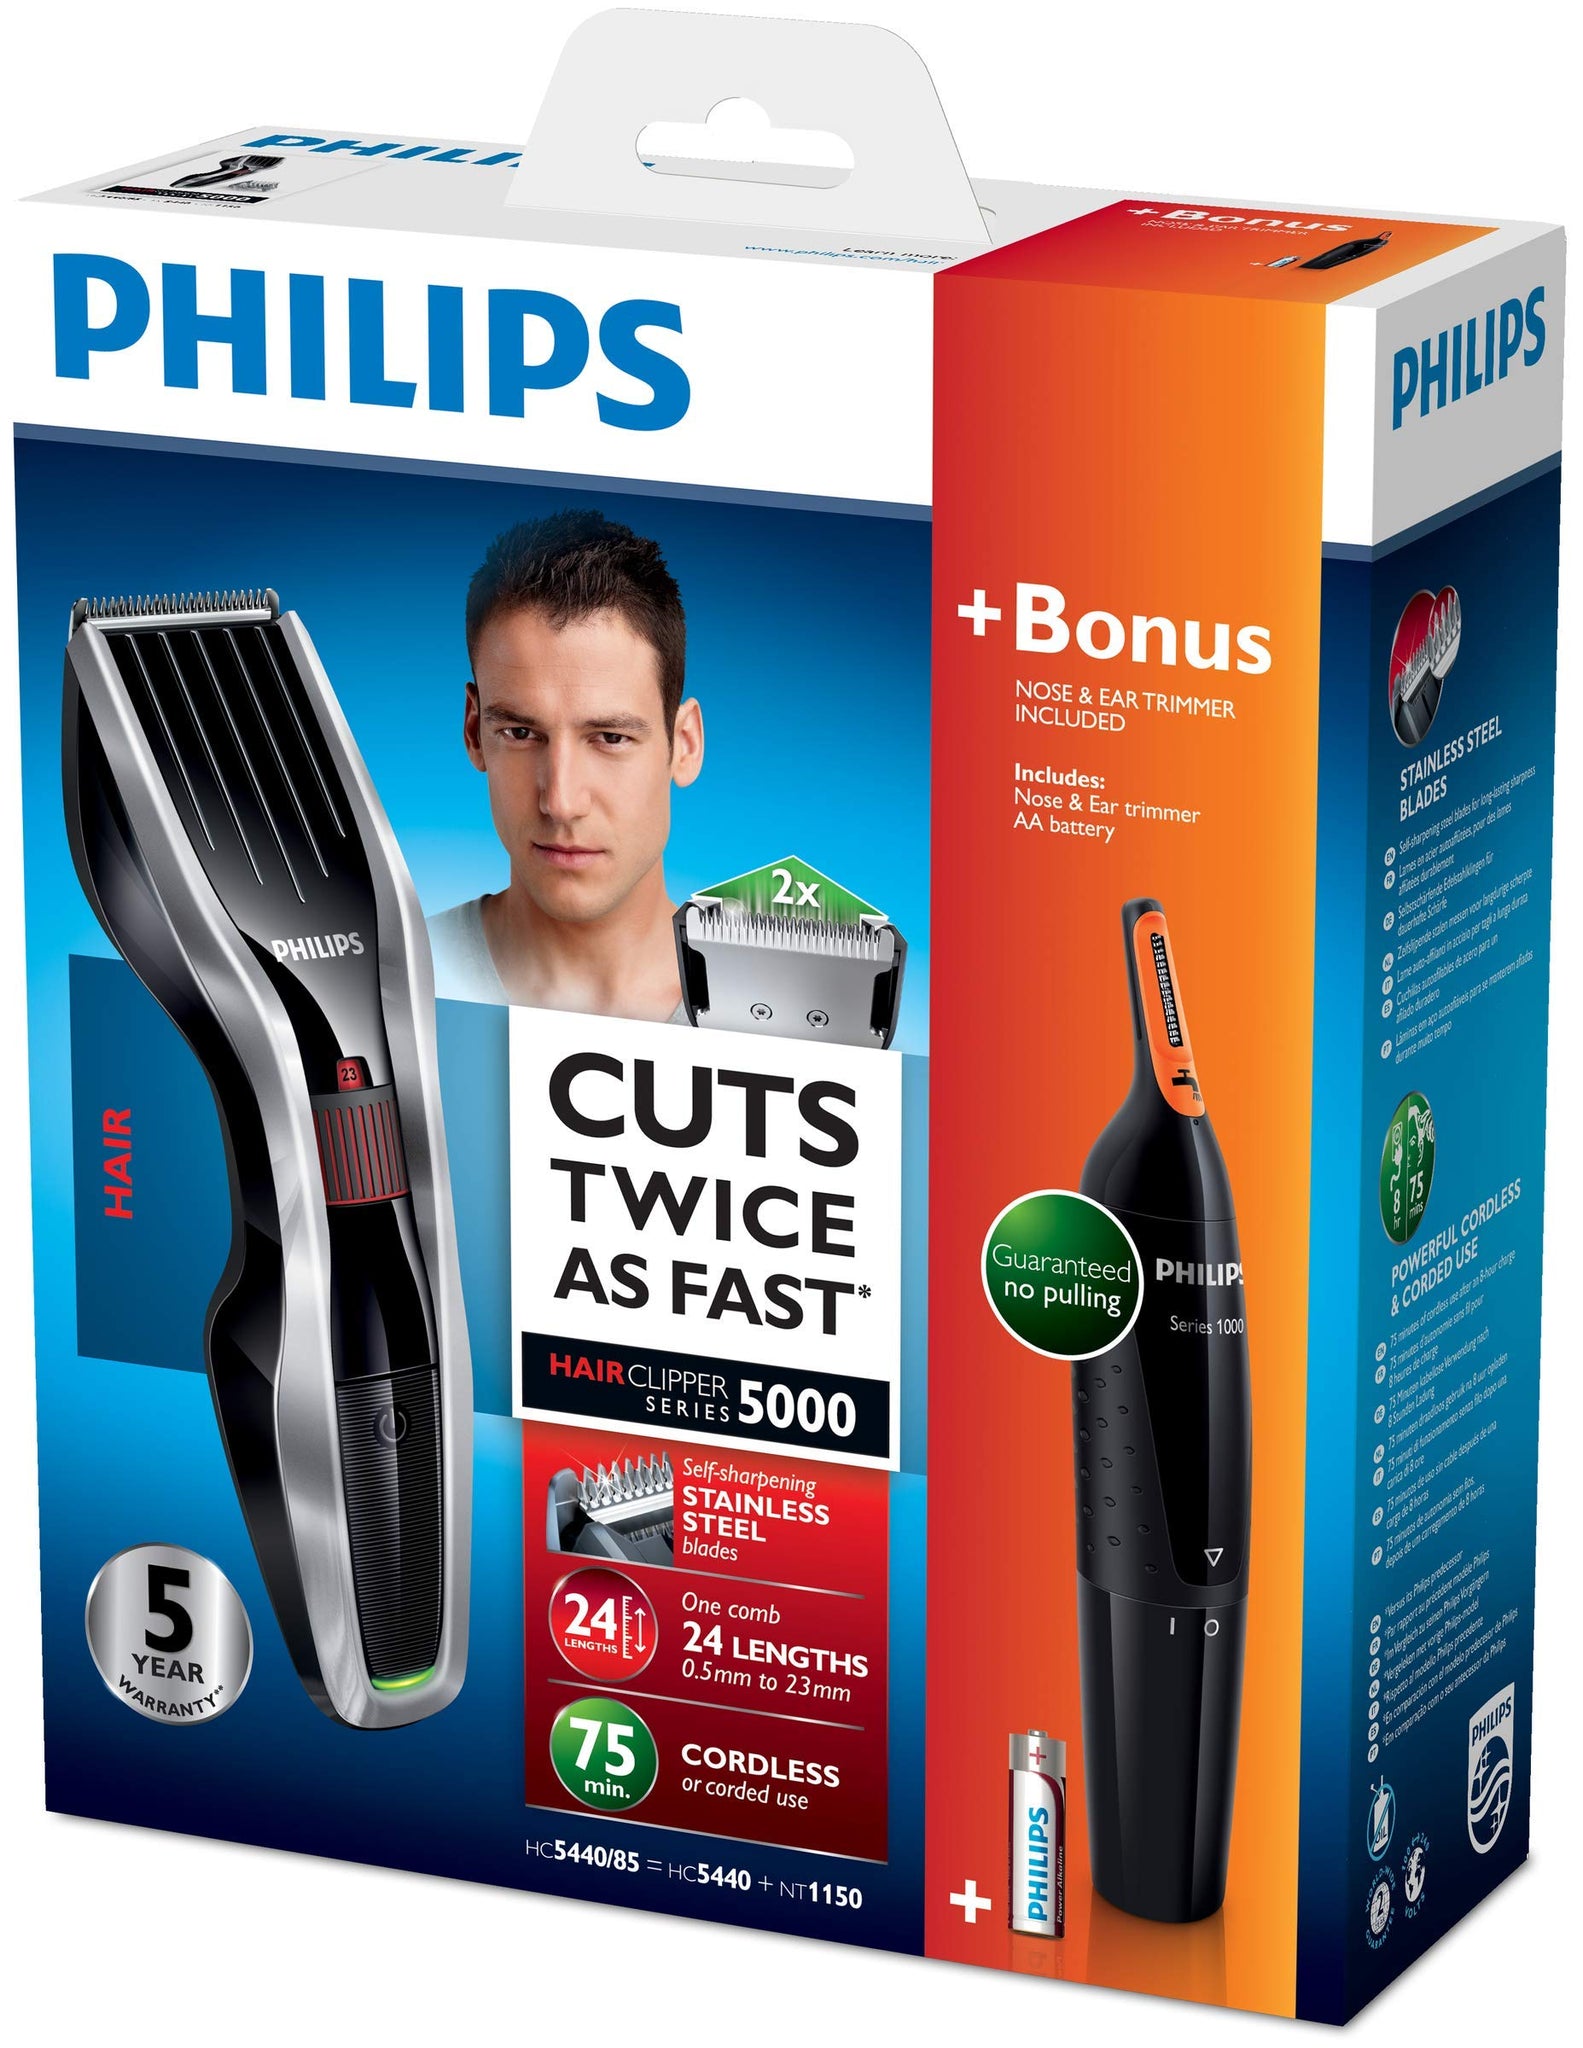 philips series 5000 hair clipper with titanium blades